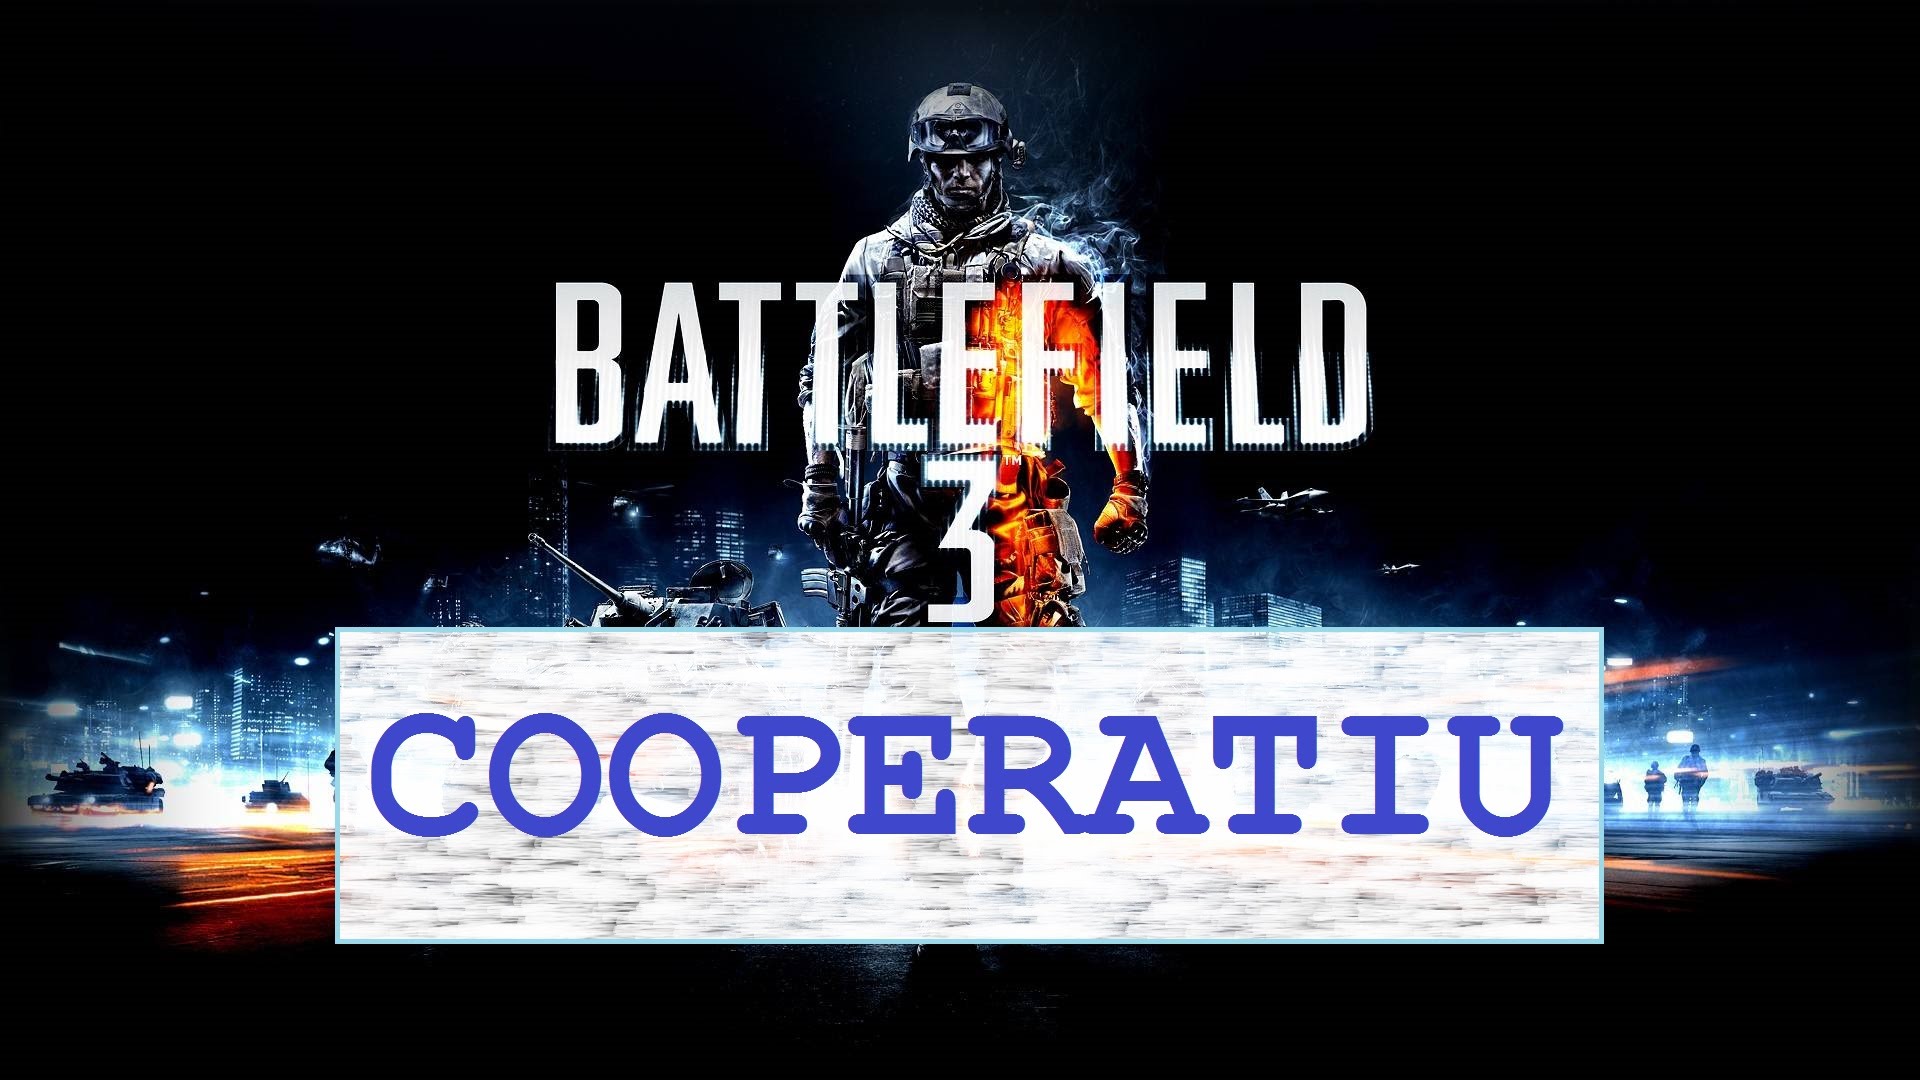 Battlefield 3 - Cooperatiu - 5a Missió de Nil66